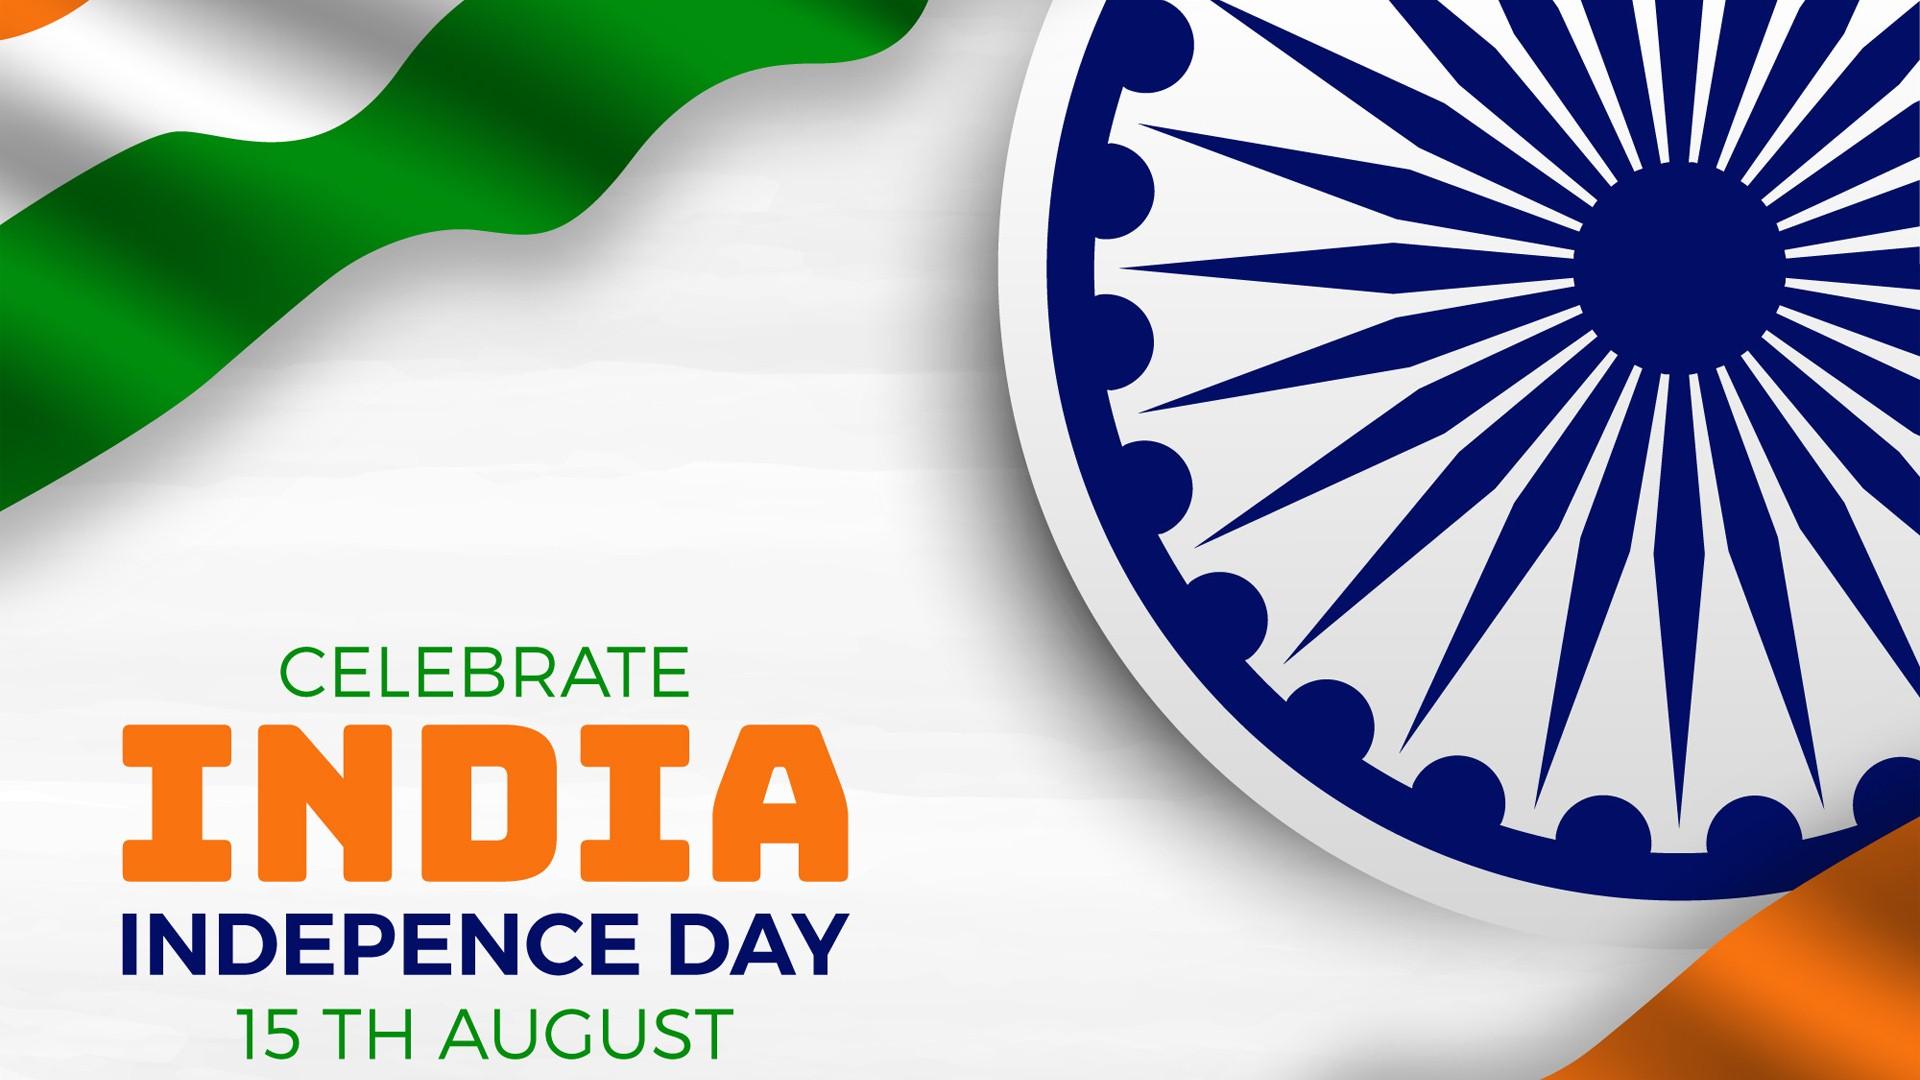 Hình nền ngày độc lập Ấn Độ sẽ mang lại một bầu không khí hào hứng với những hình ảnh đẹp và ý nghĩa về sự độc lập và tự do.